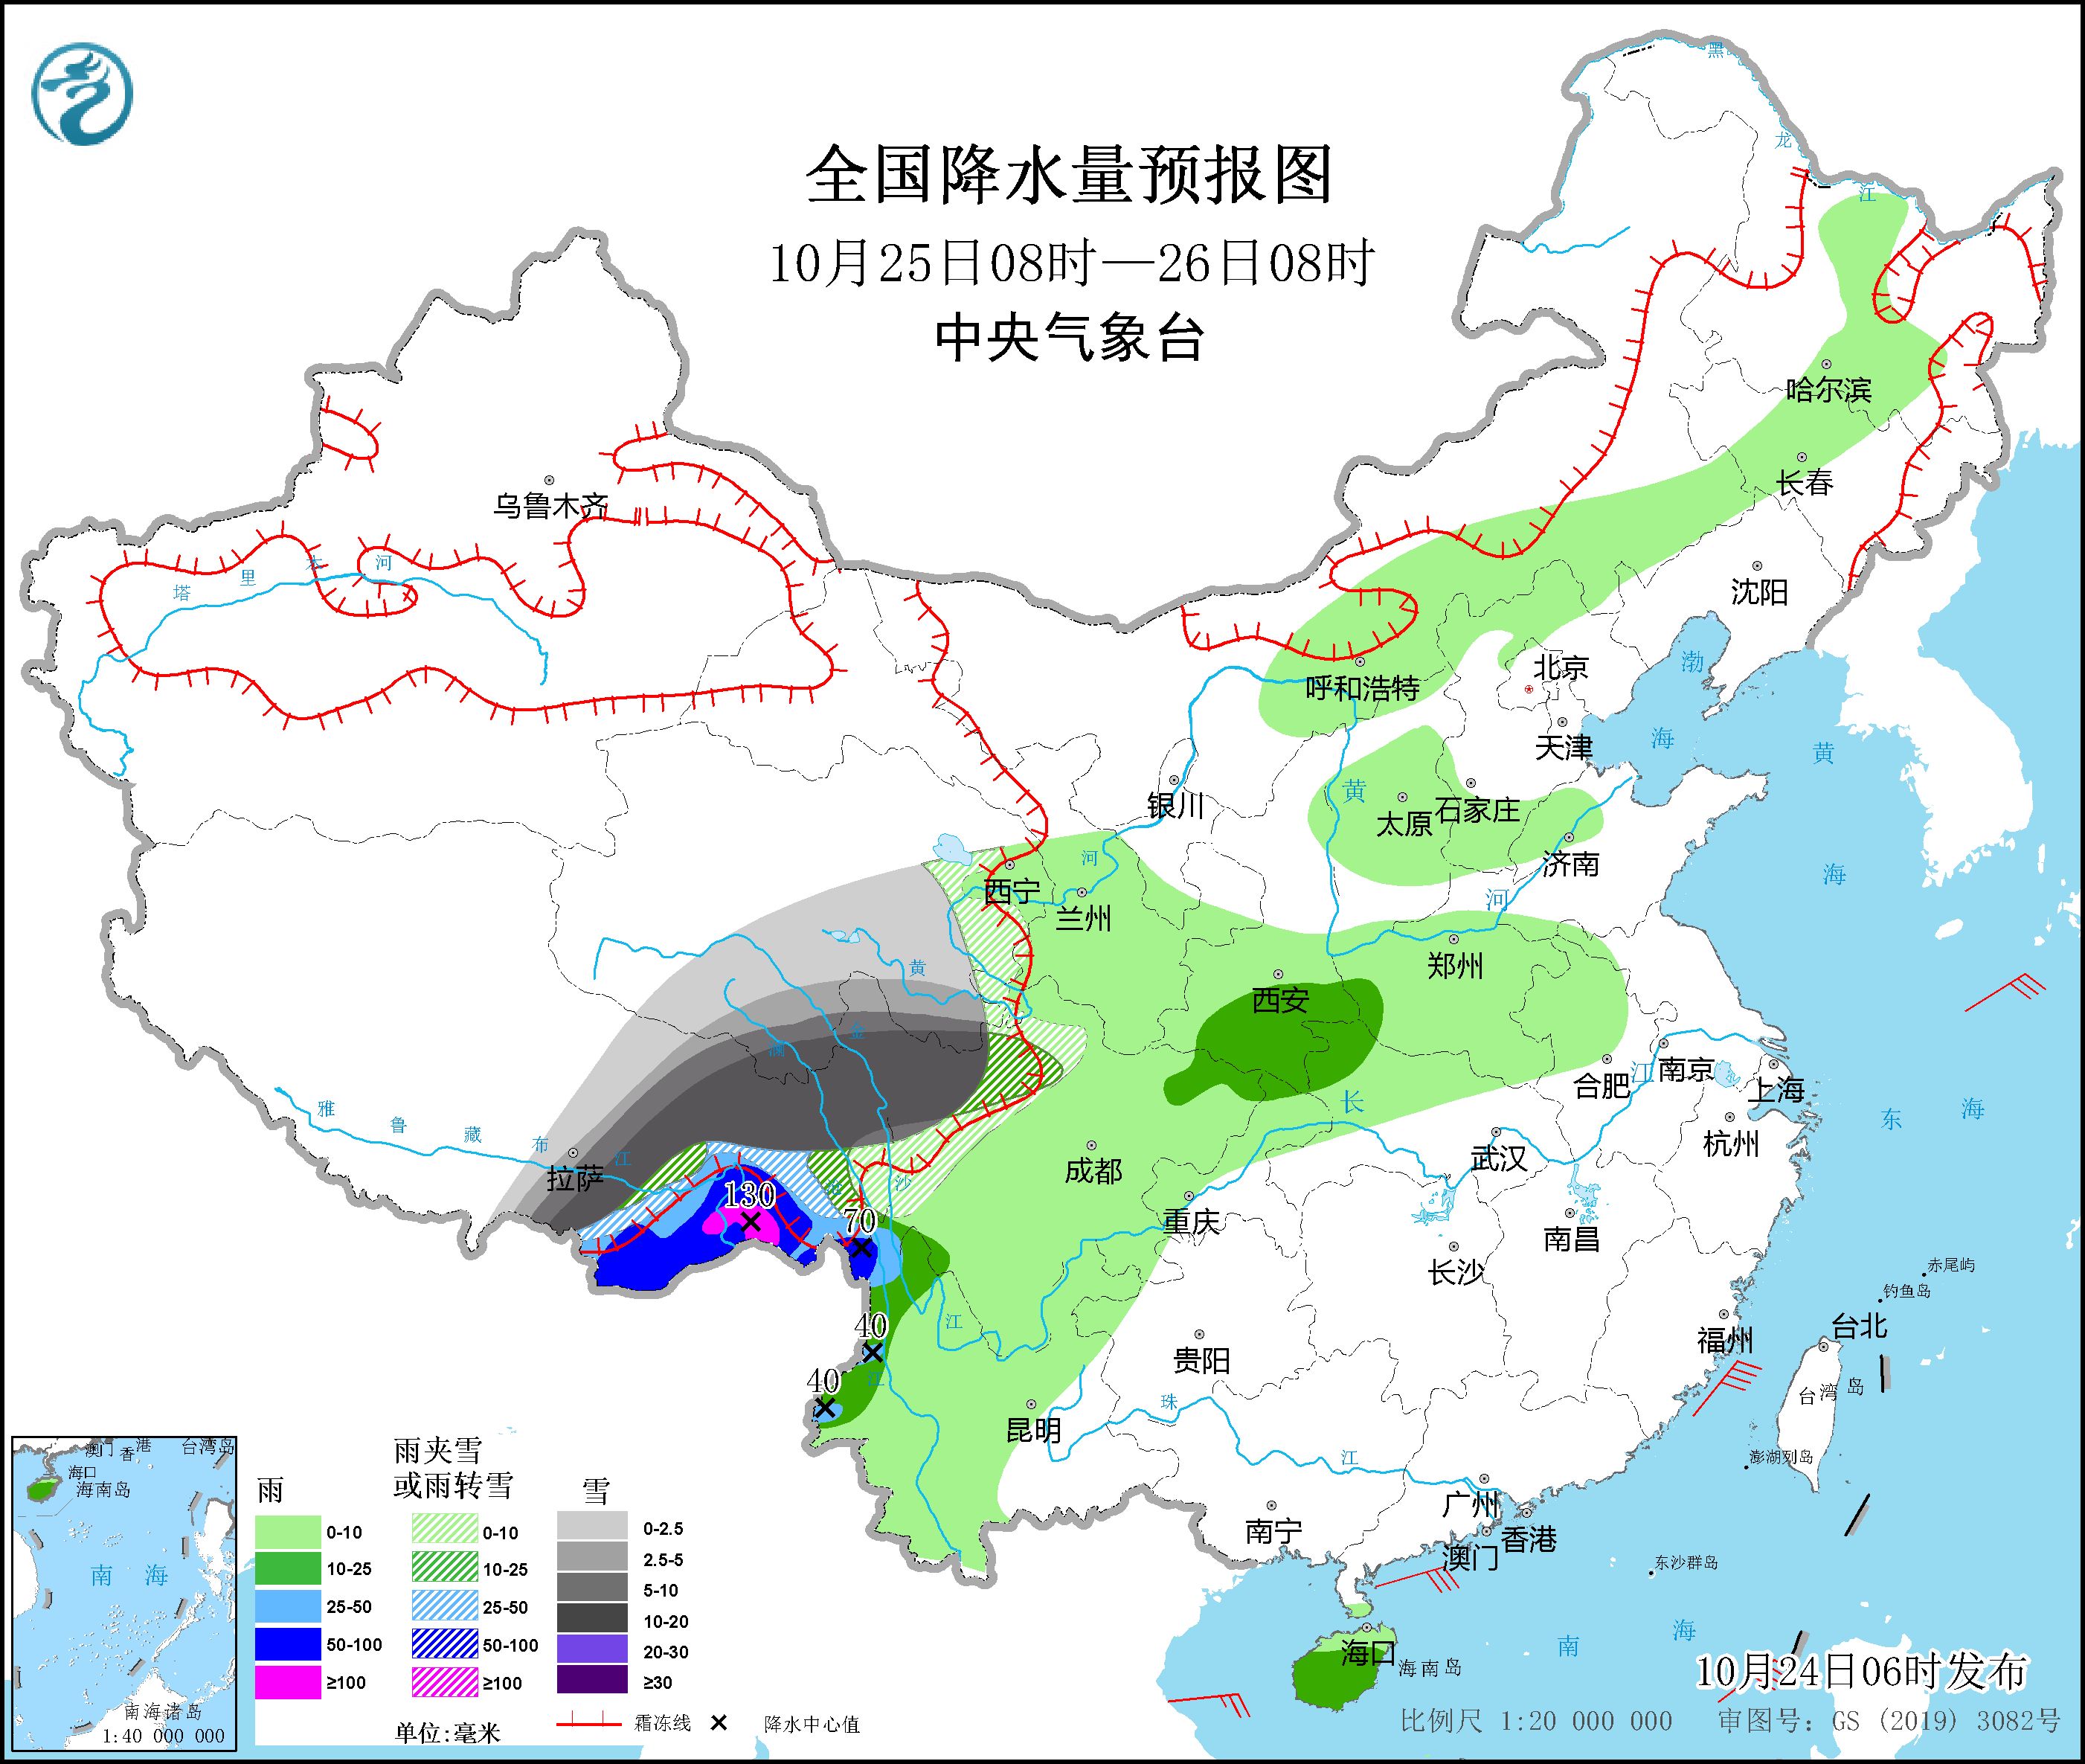 青藏高原东部将有较强雨雪天气 海南岛将有较强风雨天气